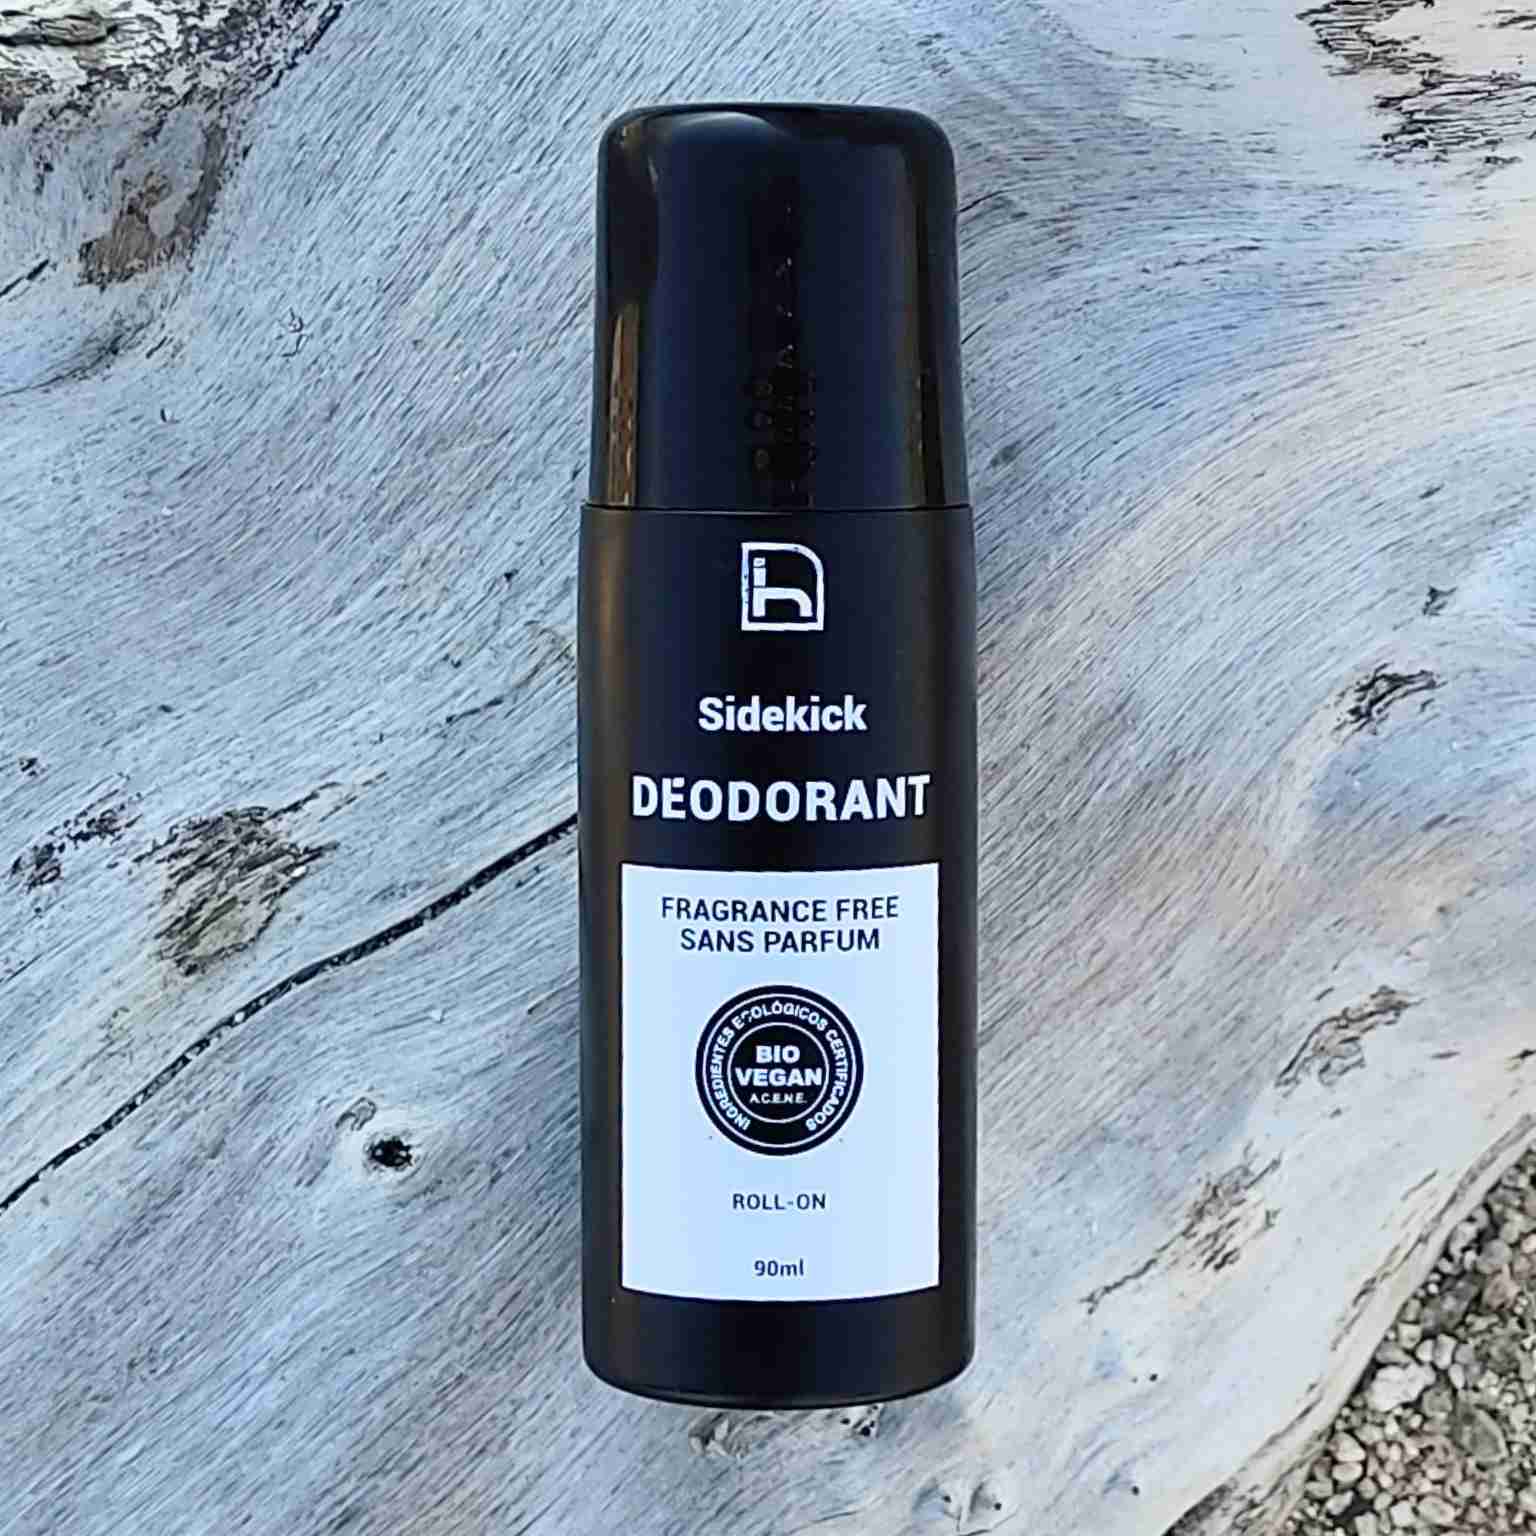 Fragrance-free deodorant for men